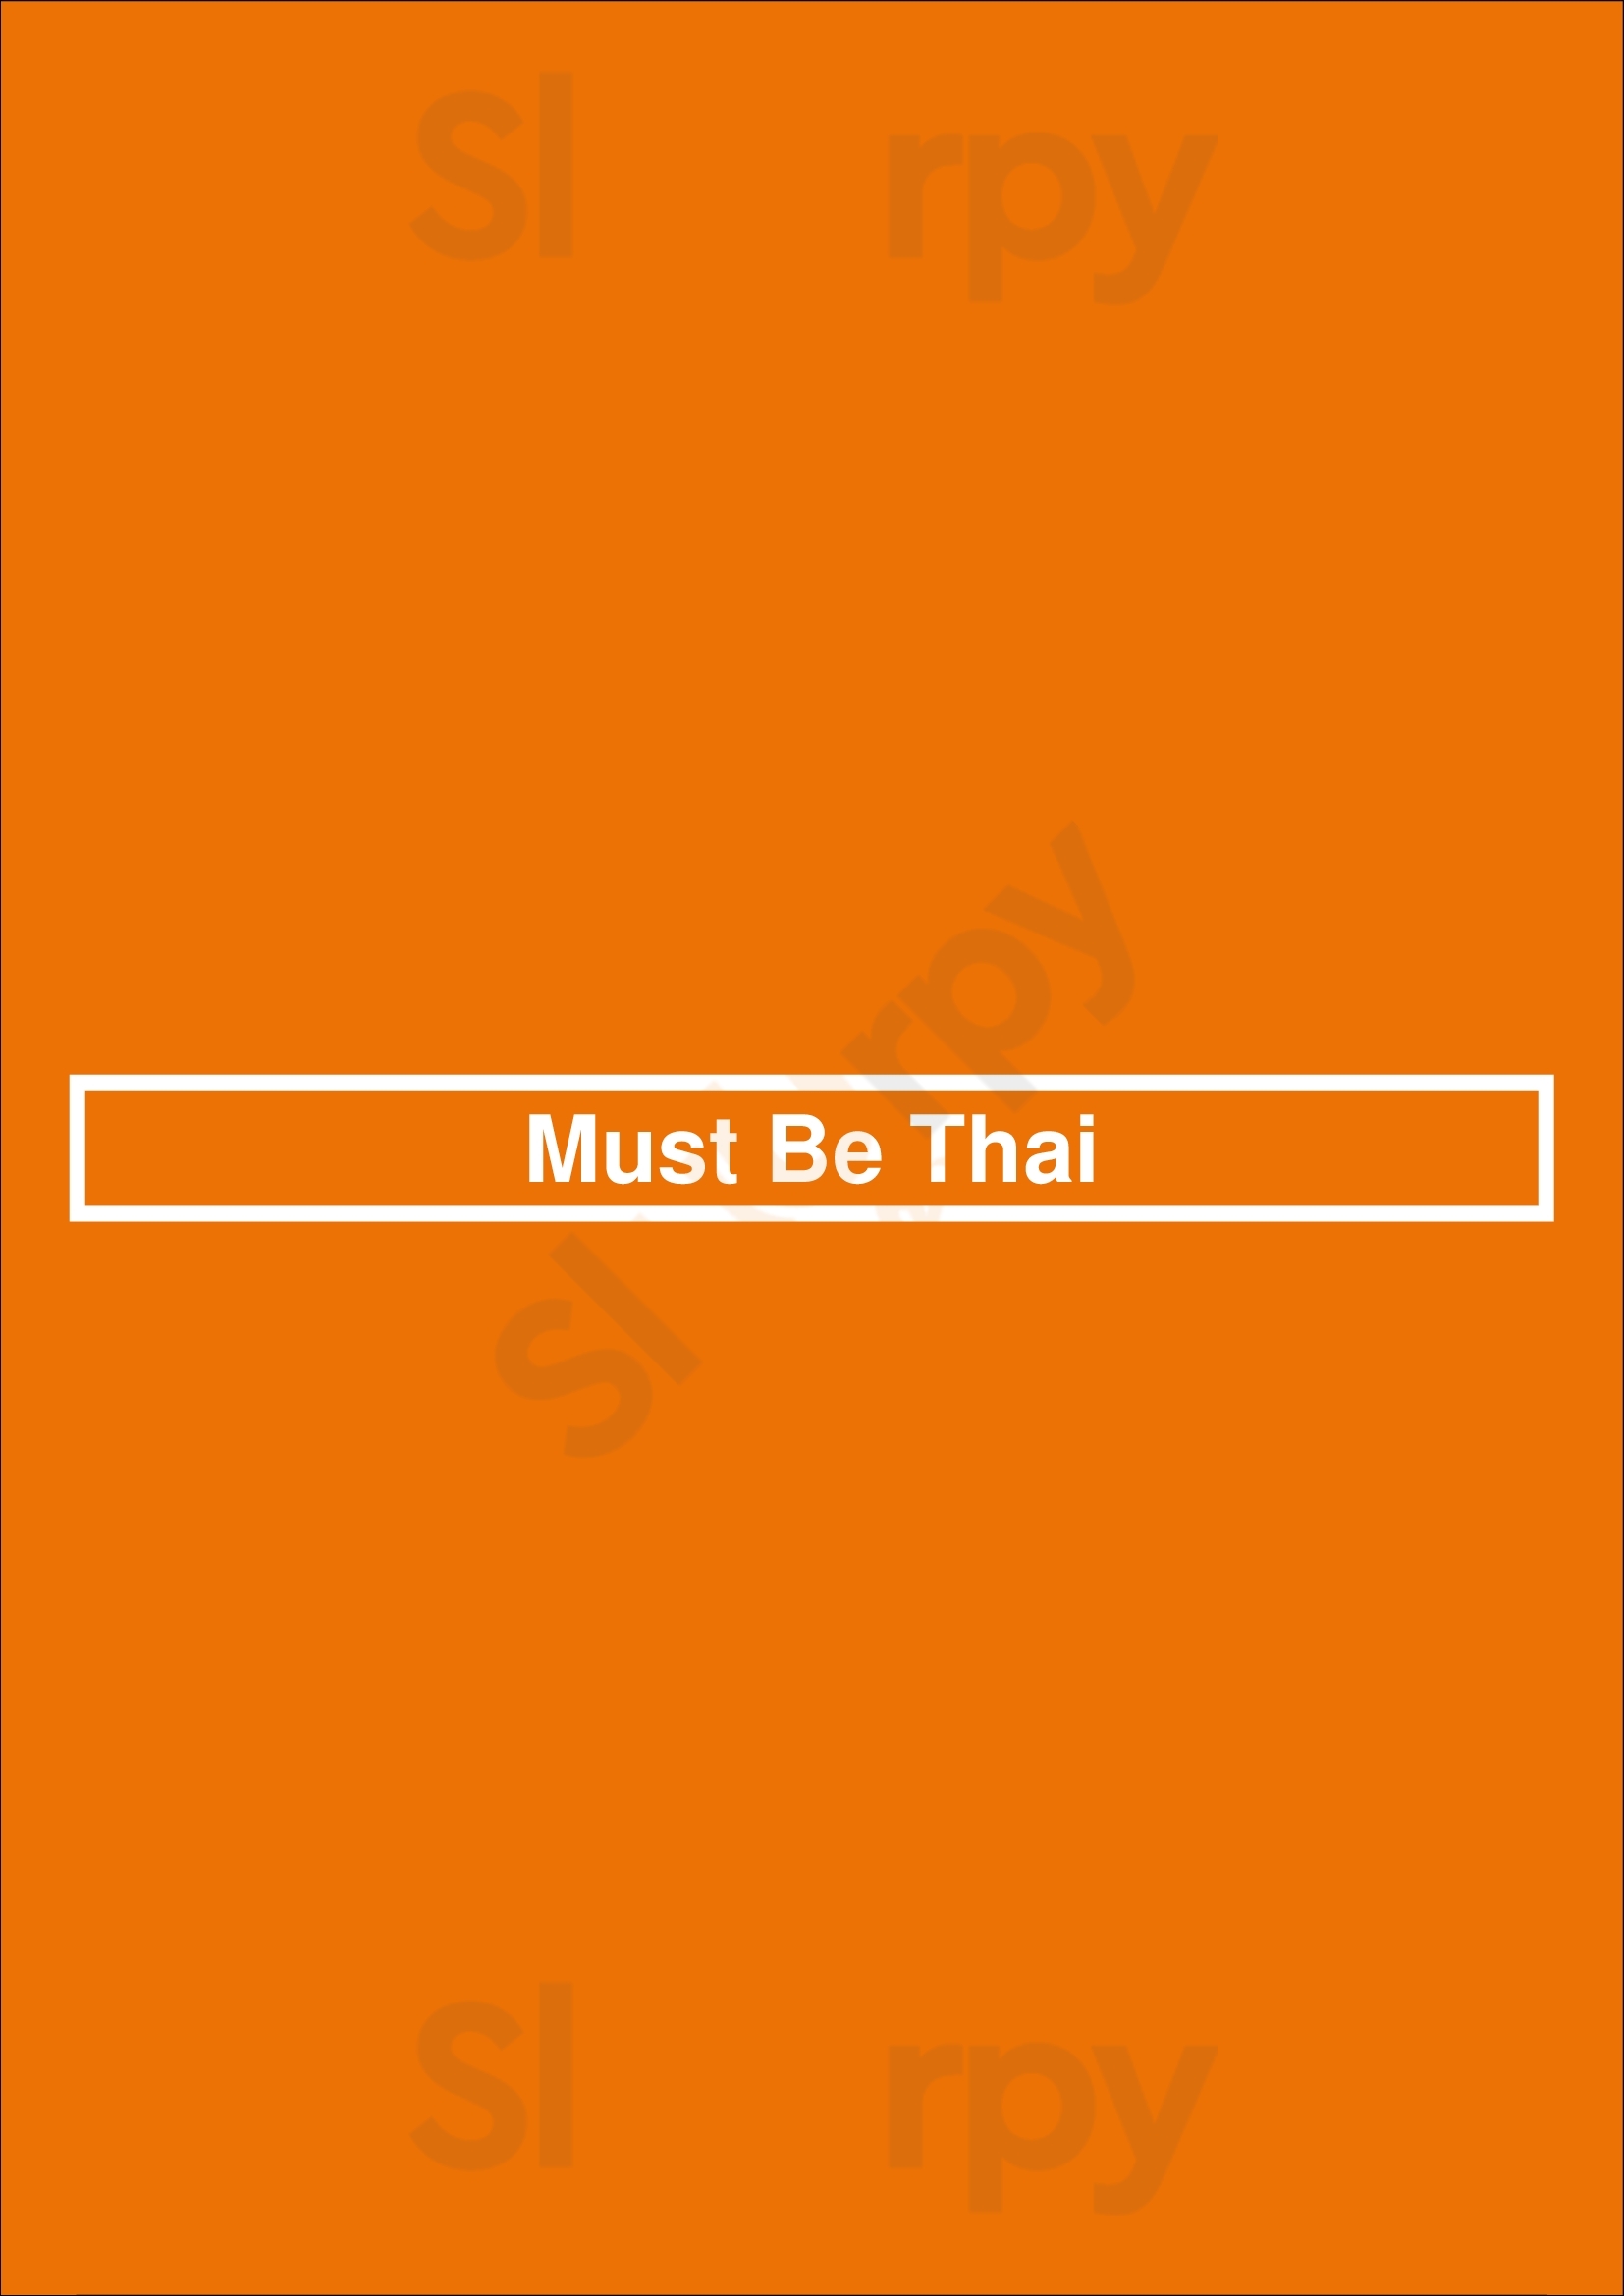 Must Be Thai San Jose Menu - 1